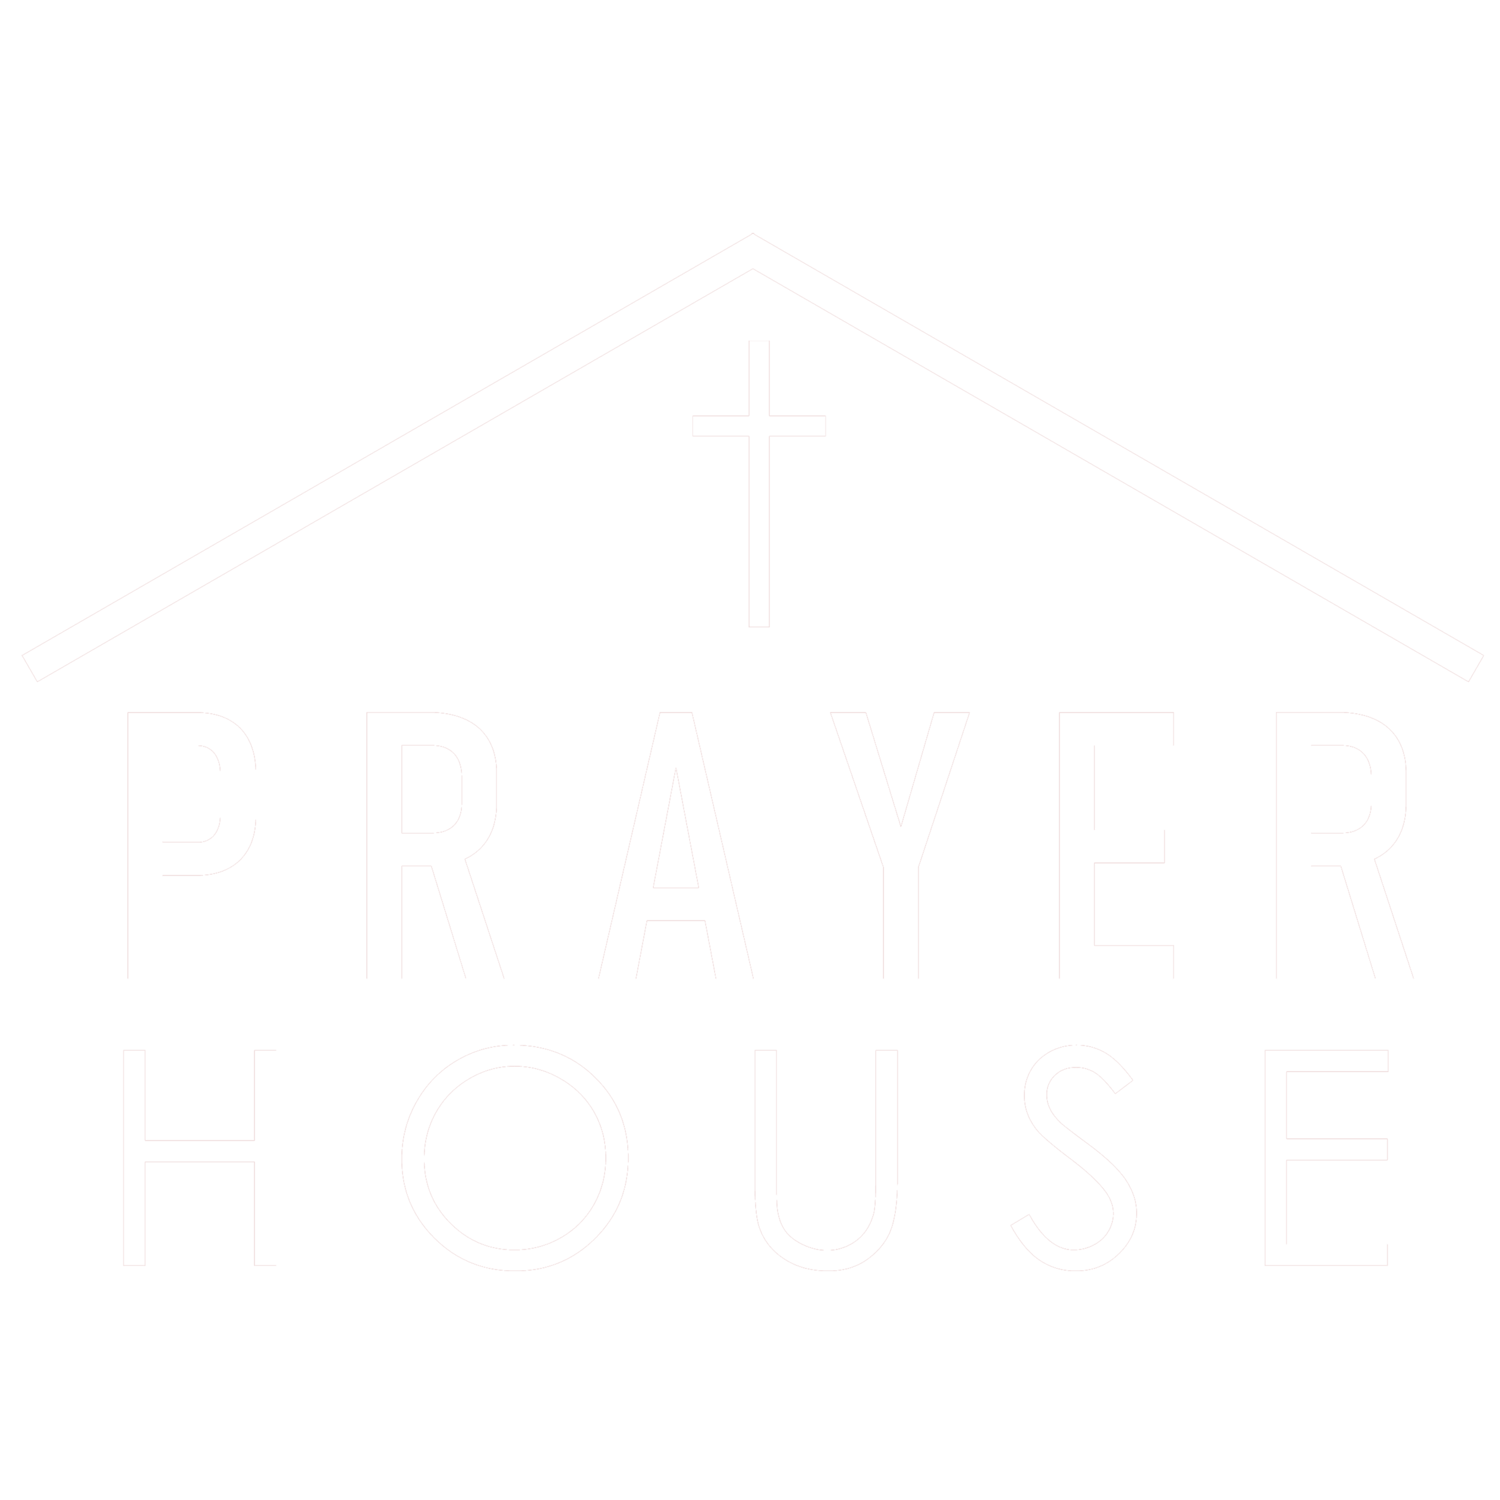 PRAYER HOUSE